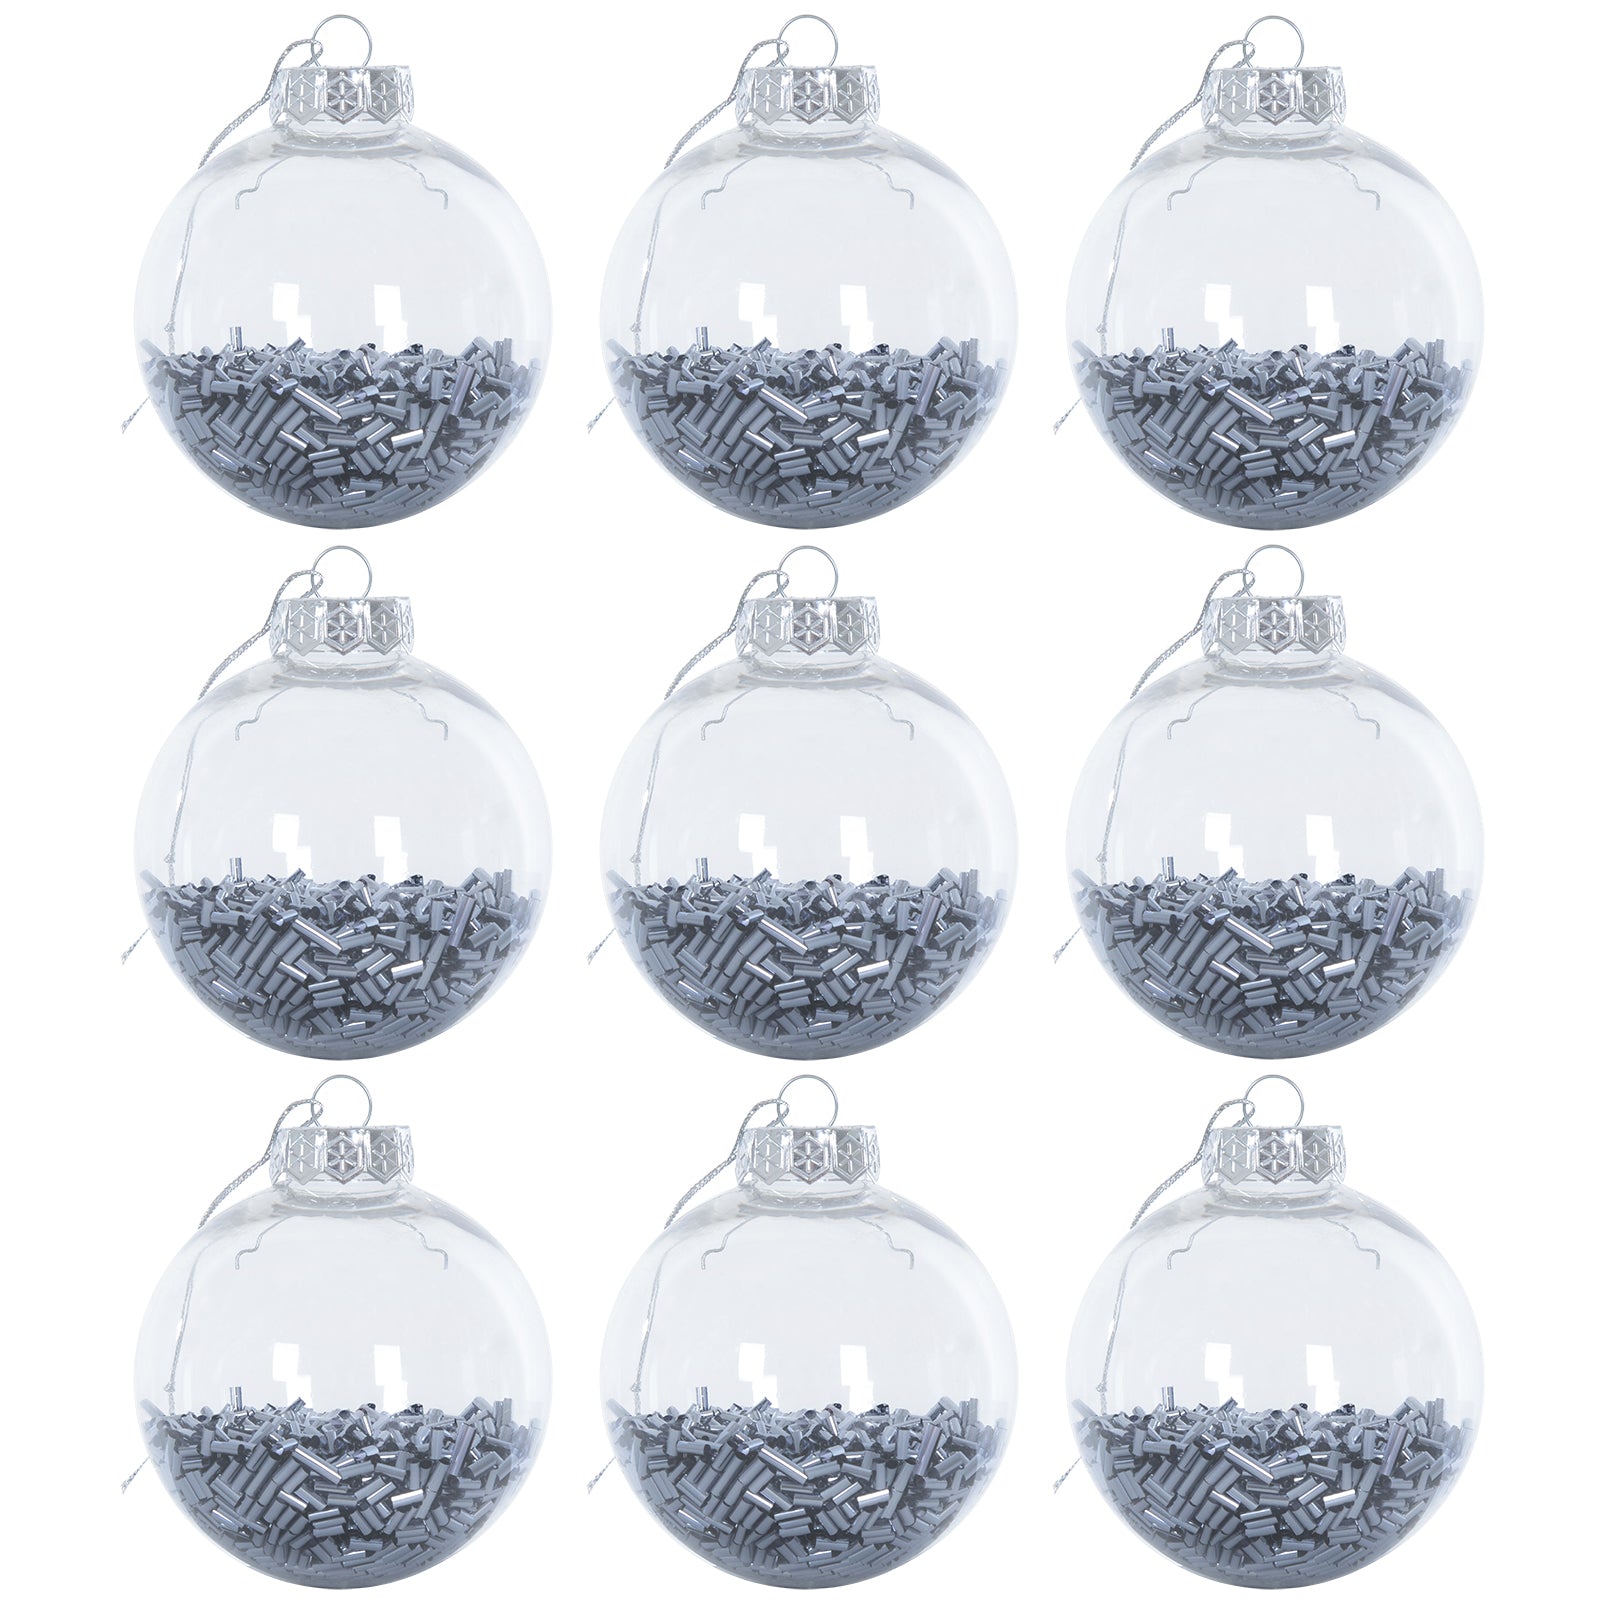 Mr Crimbo 9 x 8cm Foil Filled Shaker Christmas Tree Baubles - MrCrimbo.co.uk -XS6467 - Graphite -Baubles